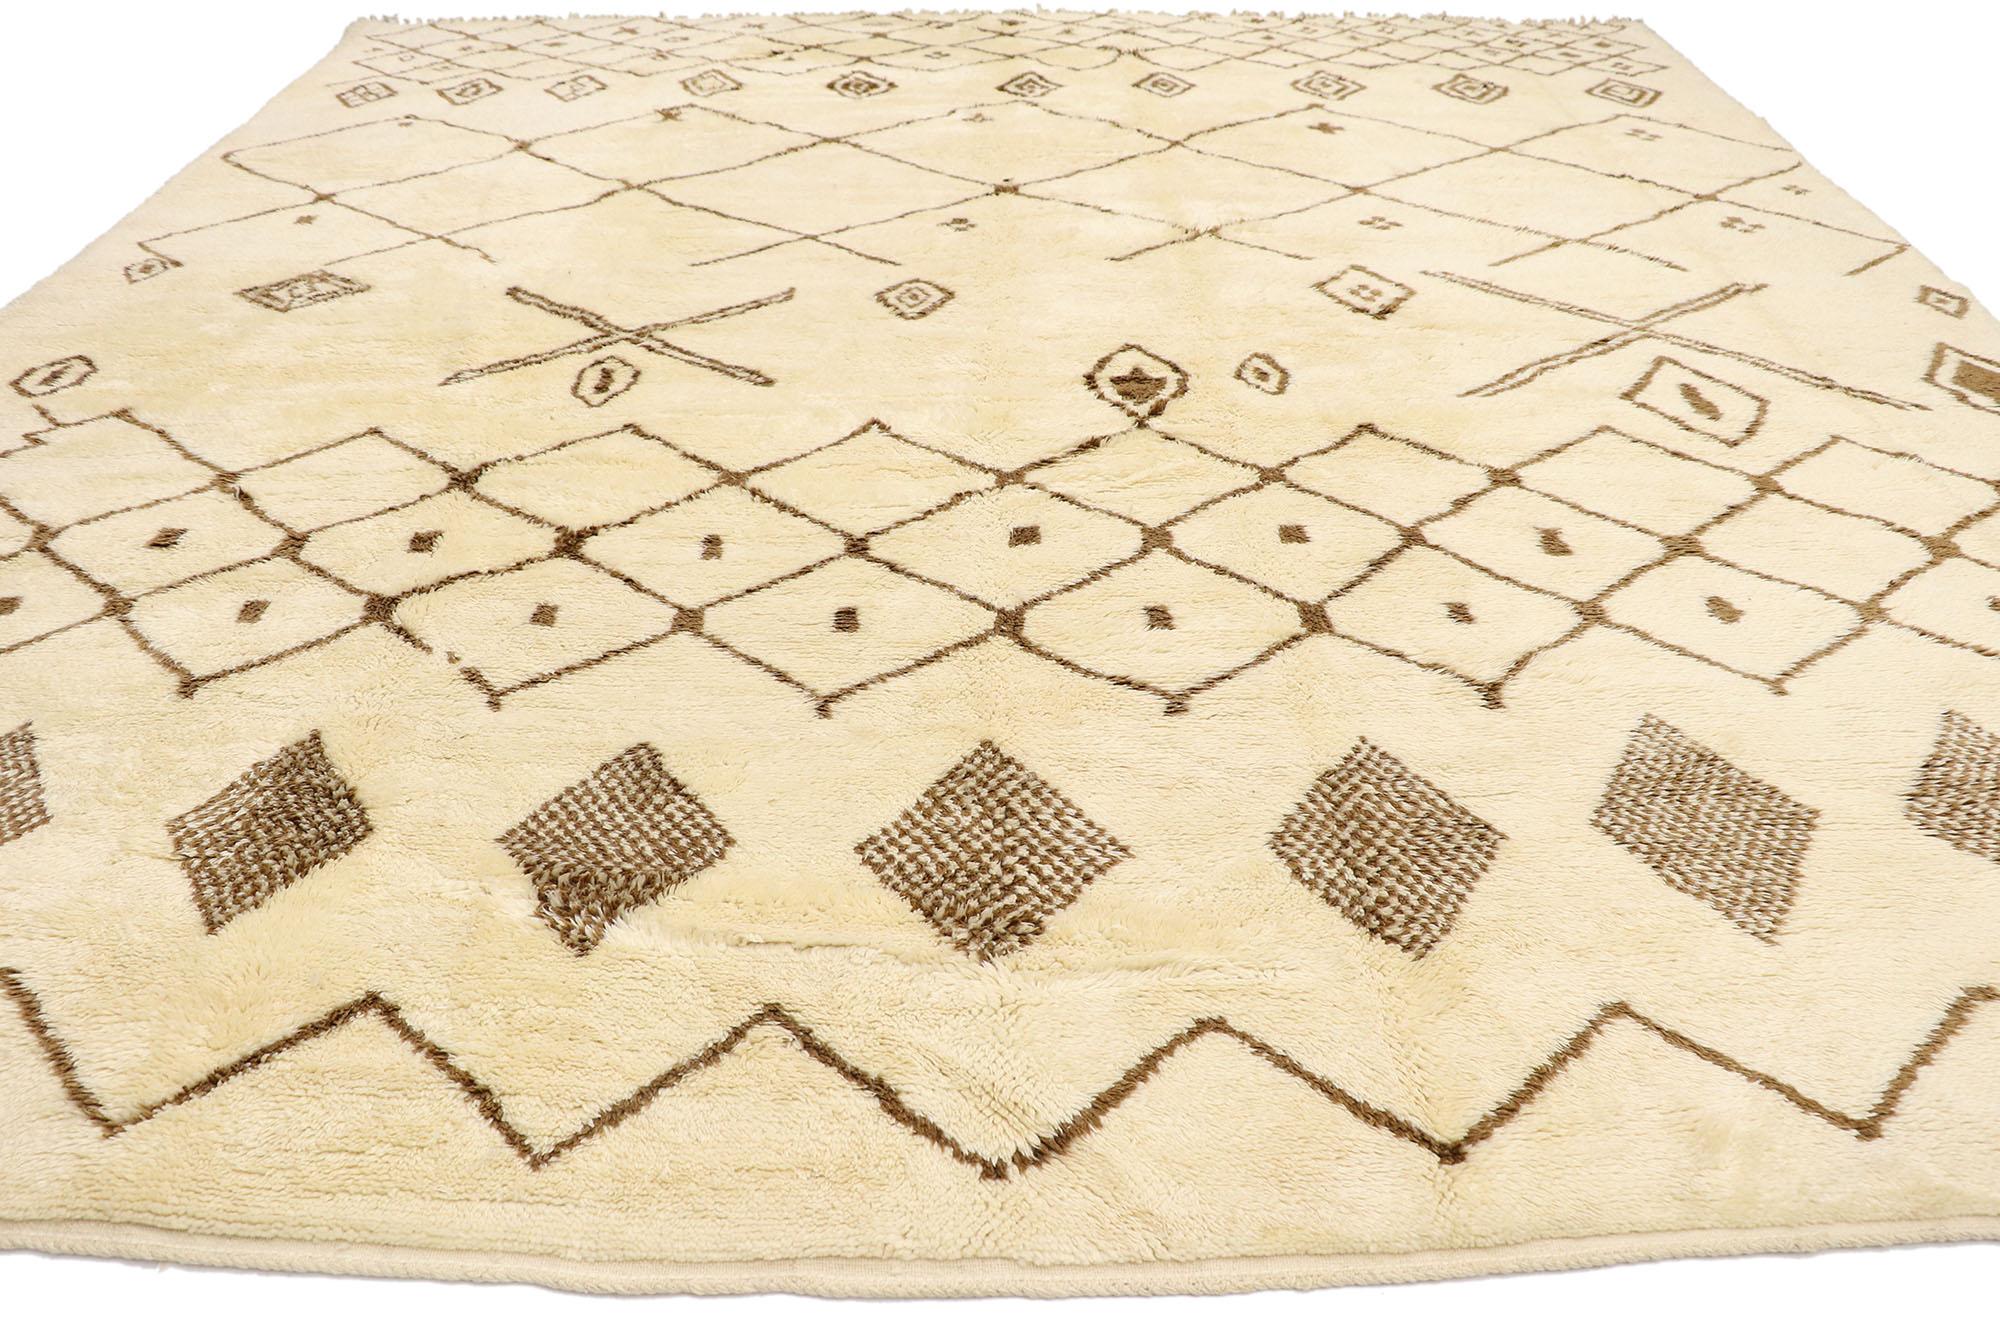 Moderne Grand tapis berbère marocain authentique, le confort hygge rencontre le charme nomade en vente